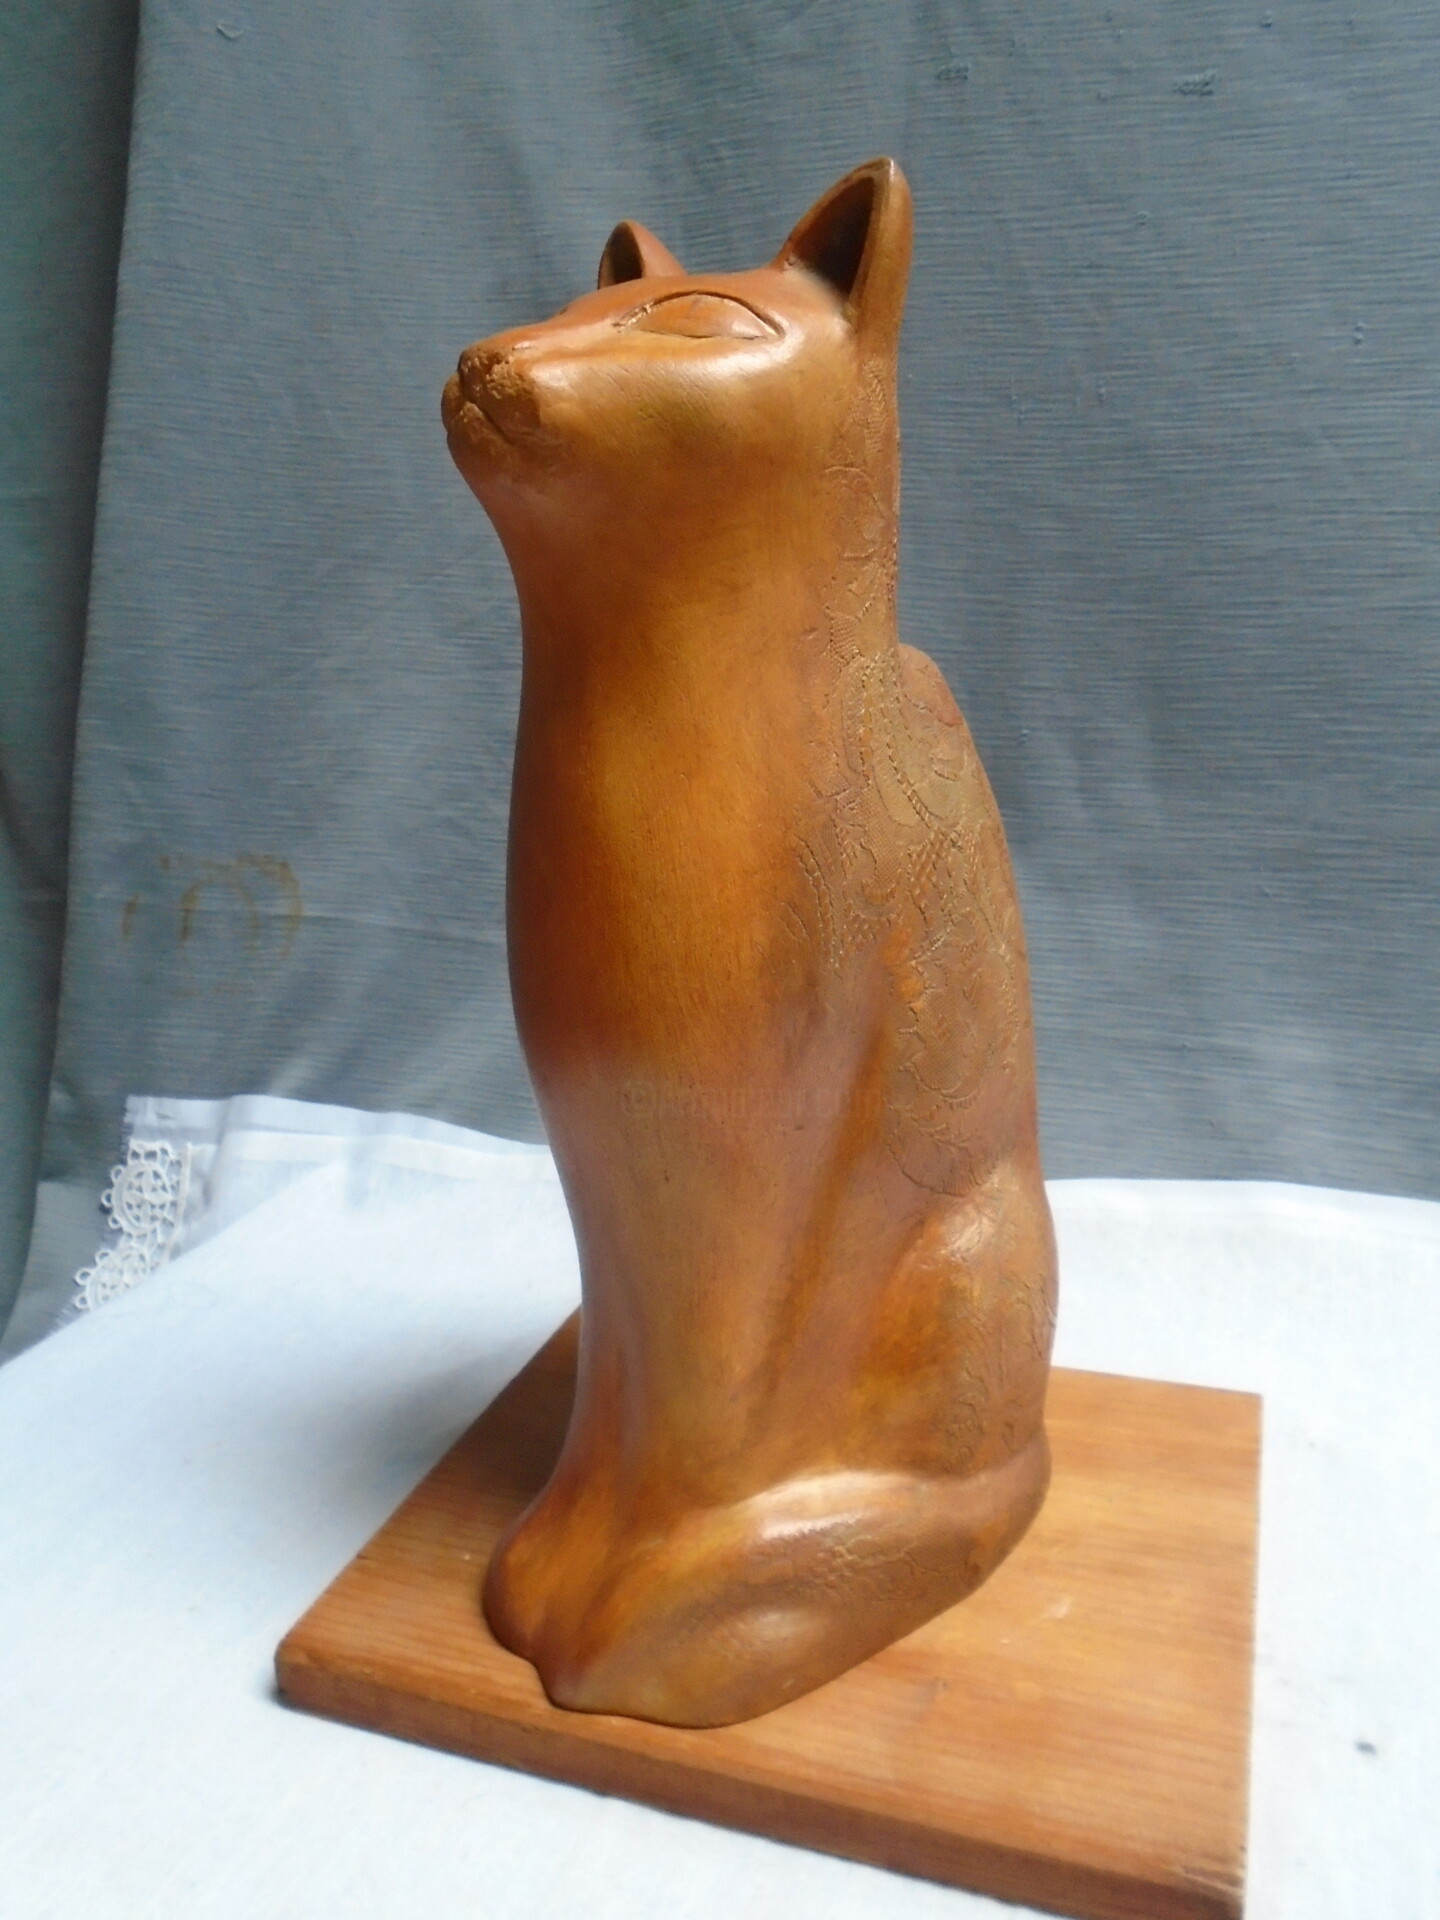 Chat, Sculpture by Le Métaliste